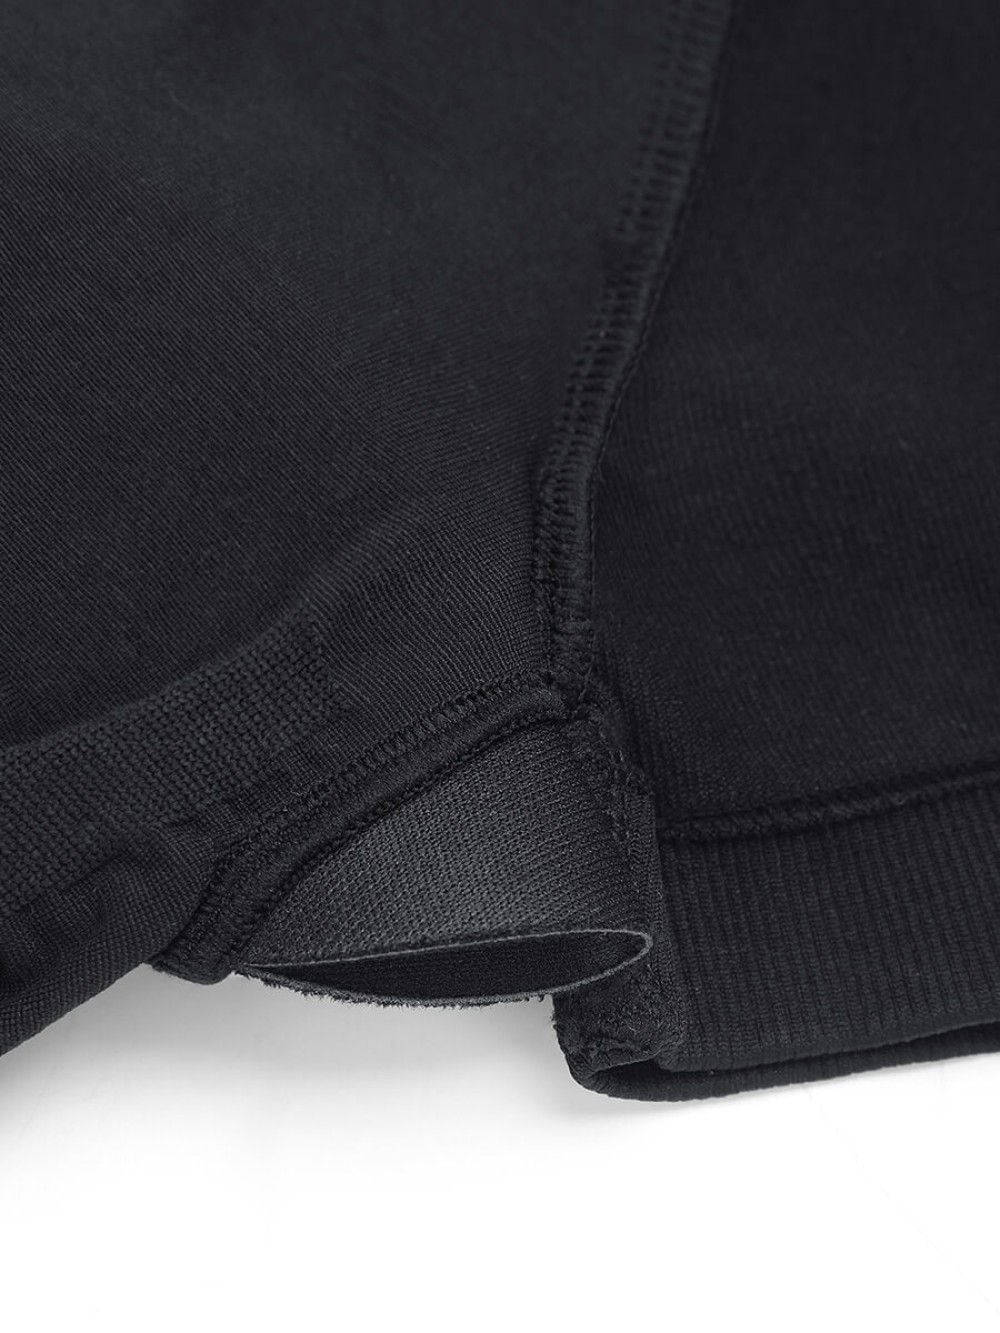 🌿Eco-friendly High Elastic Knit Seamless Shapewear Bodysuit